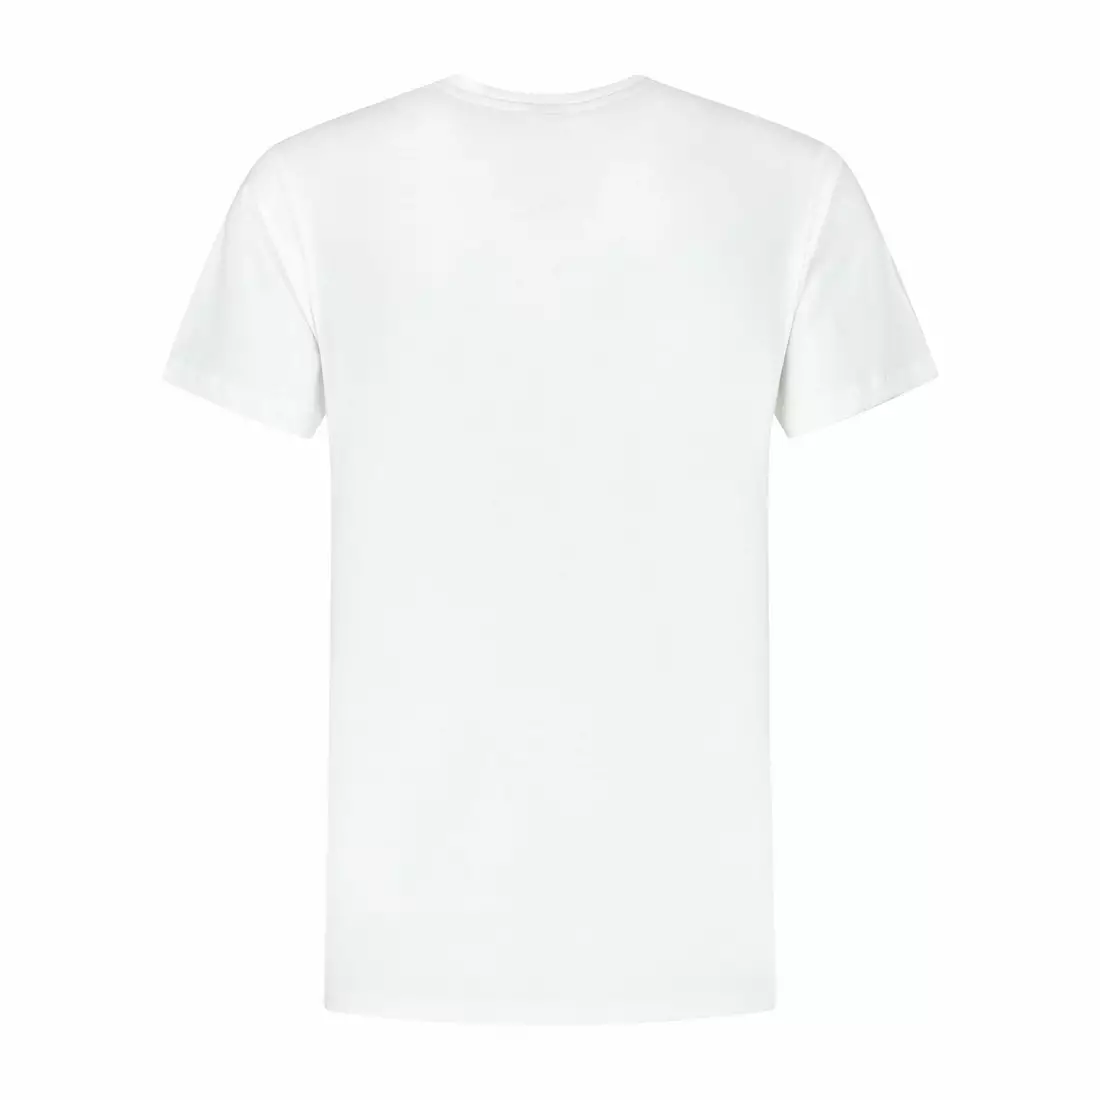 Rogelli pánské tričko LOGO bílé